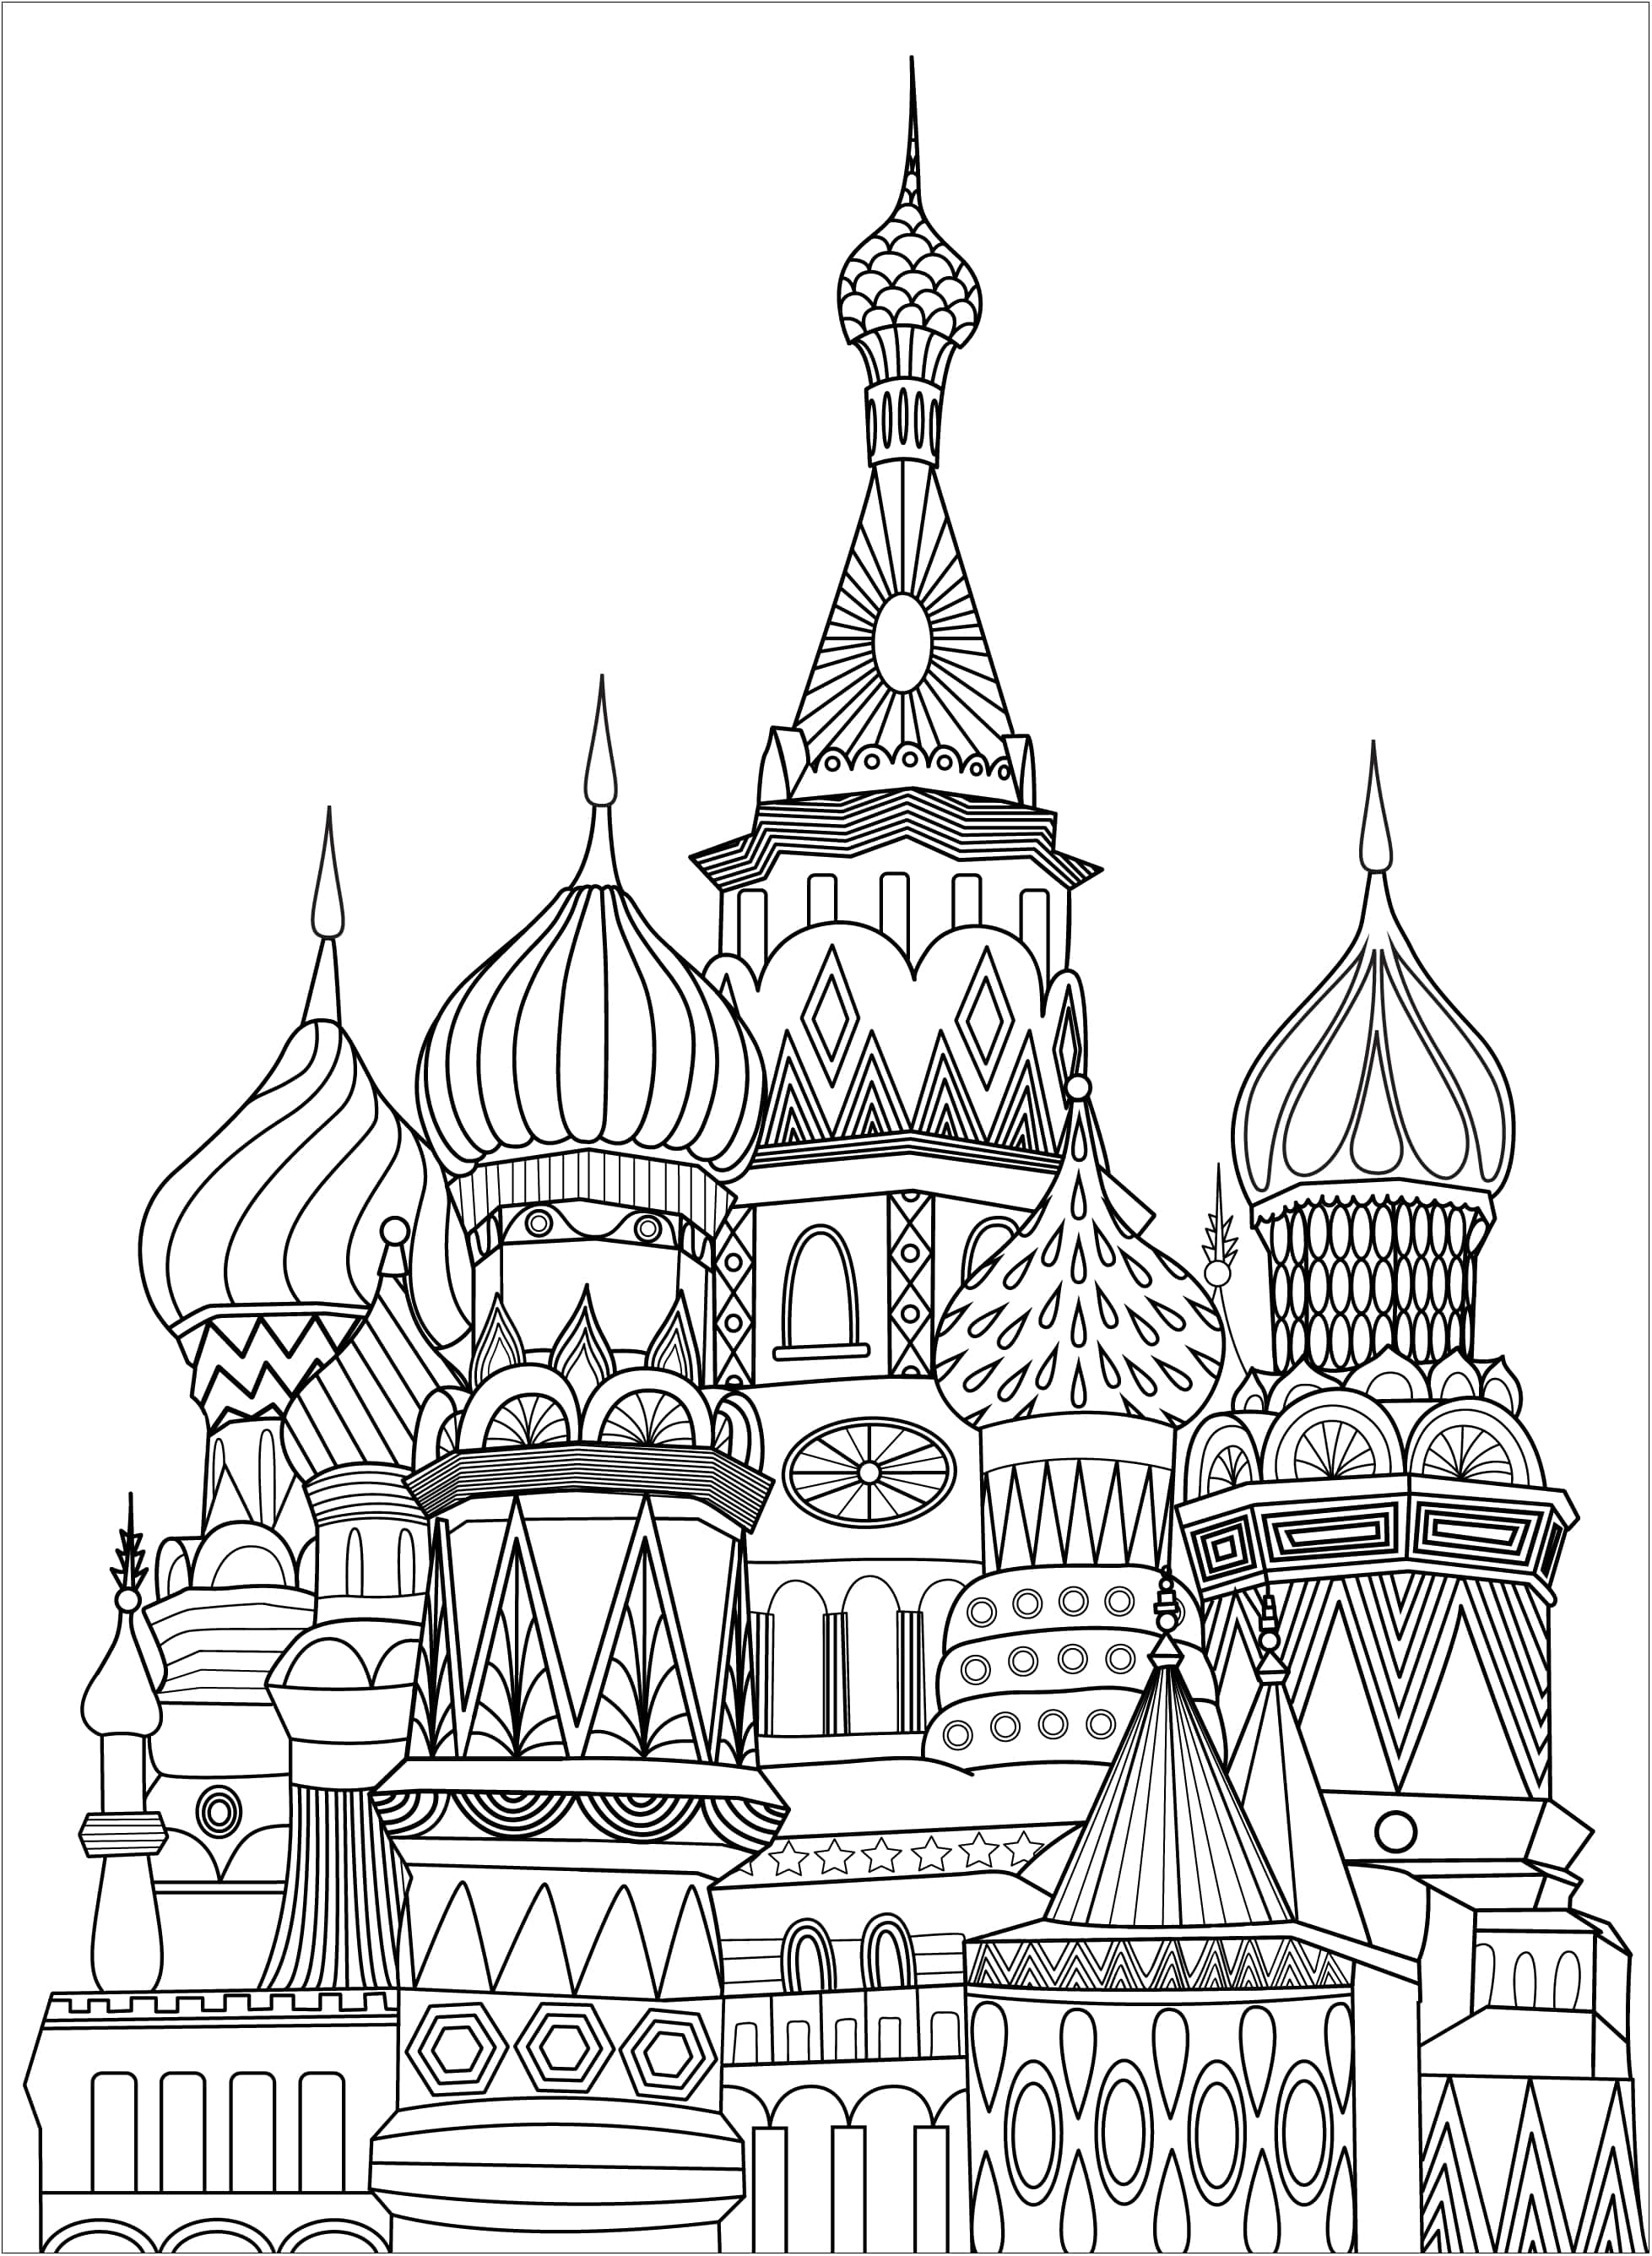 Desenho de colorir único representando a Praça Vermelha em Moscovo. A Praça Vermelha é uma praça aberta em Moscovo, adjacente à fortaleza histórica e ao centro do governo conhecido como Kremlin